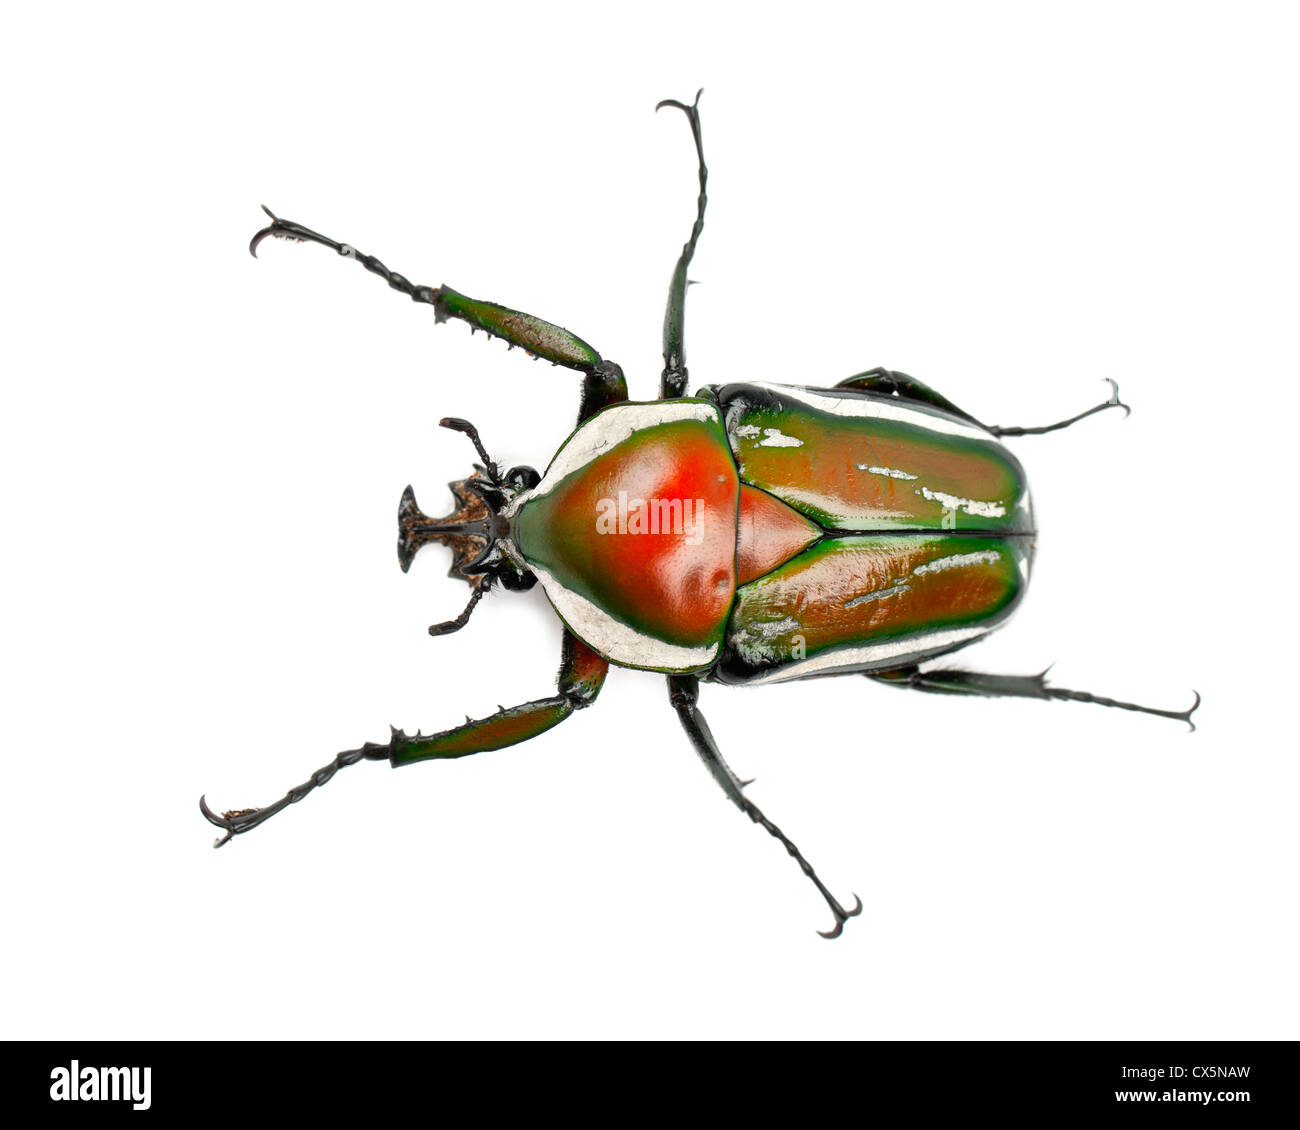 Derby maschio's Flower Beetle, Dicronorrhina derbyana layardi, una specie di coleotteri, contro uno sfondo bianco Foto Stock